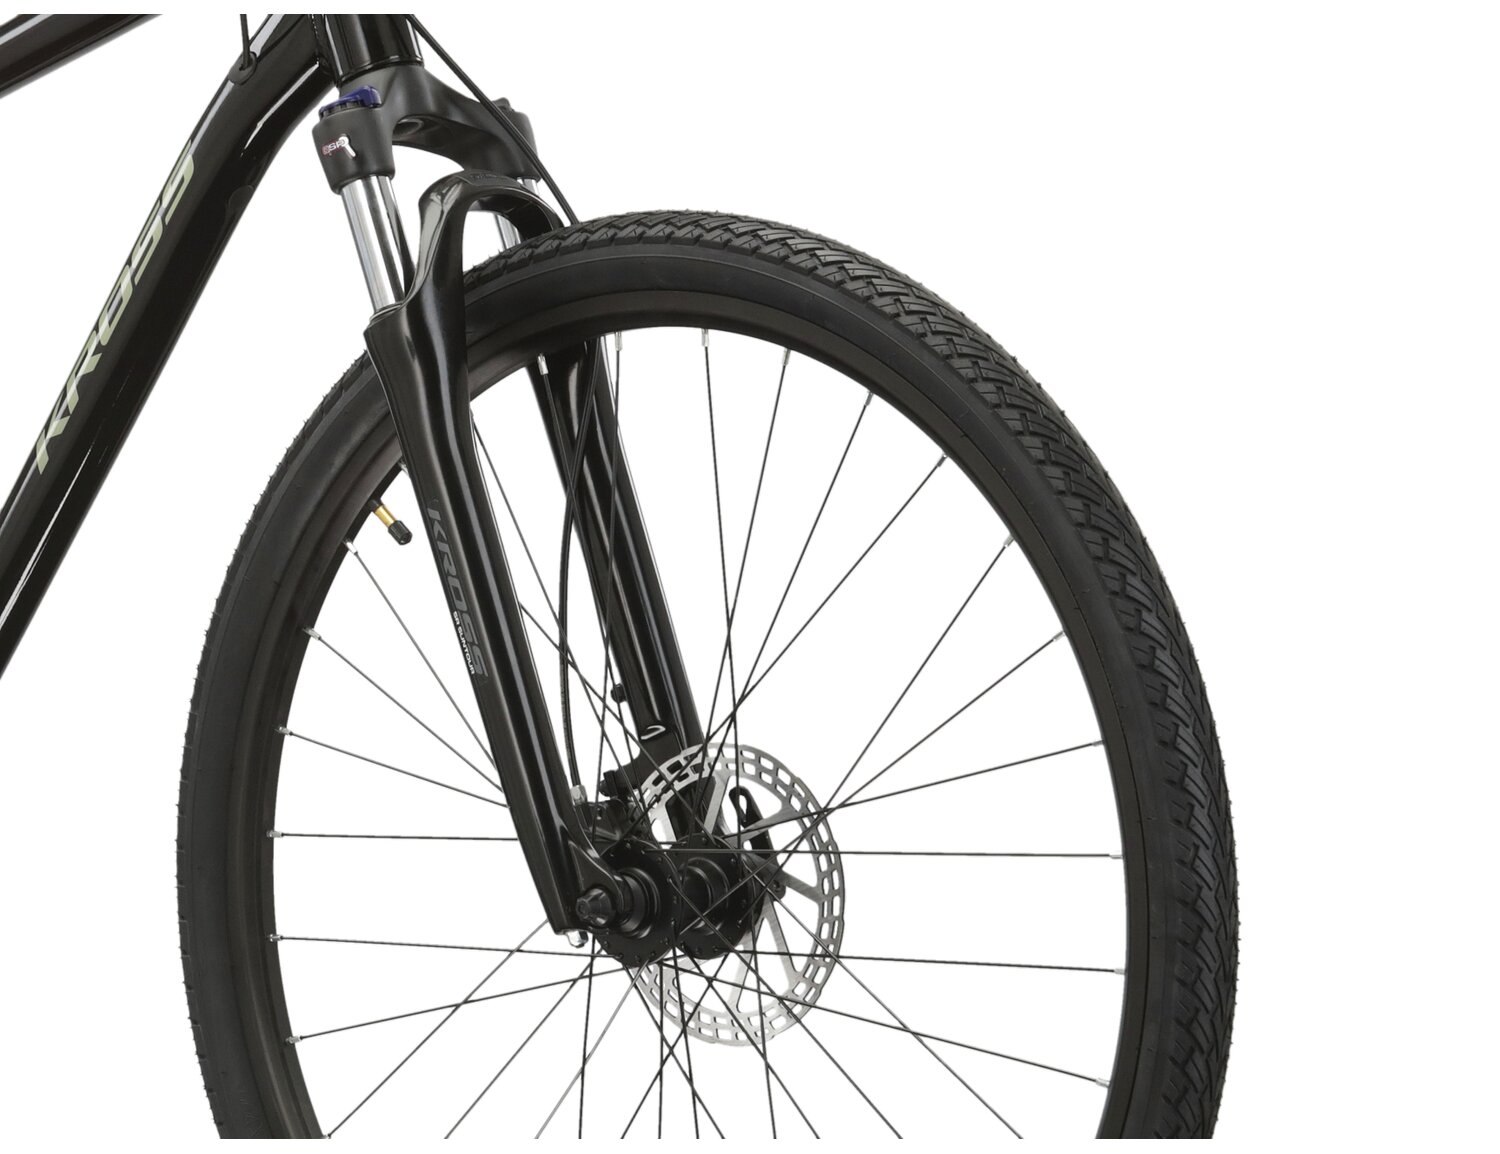 Aluminowa rama, amortyzowany widelec SR SUNTOUR NEX HLO oraz opony Wanda w rowerze crossowym KROSS Evado 5.0 